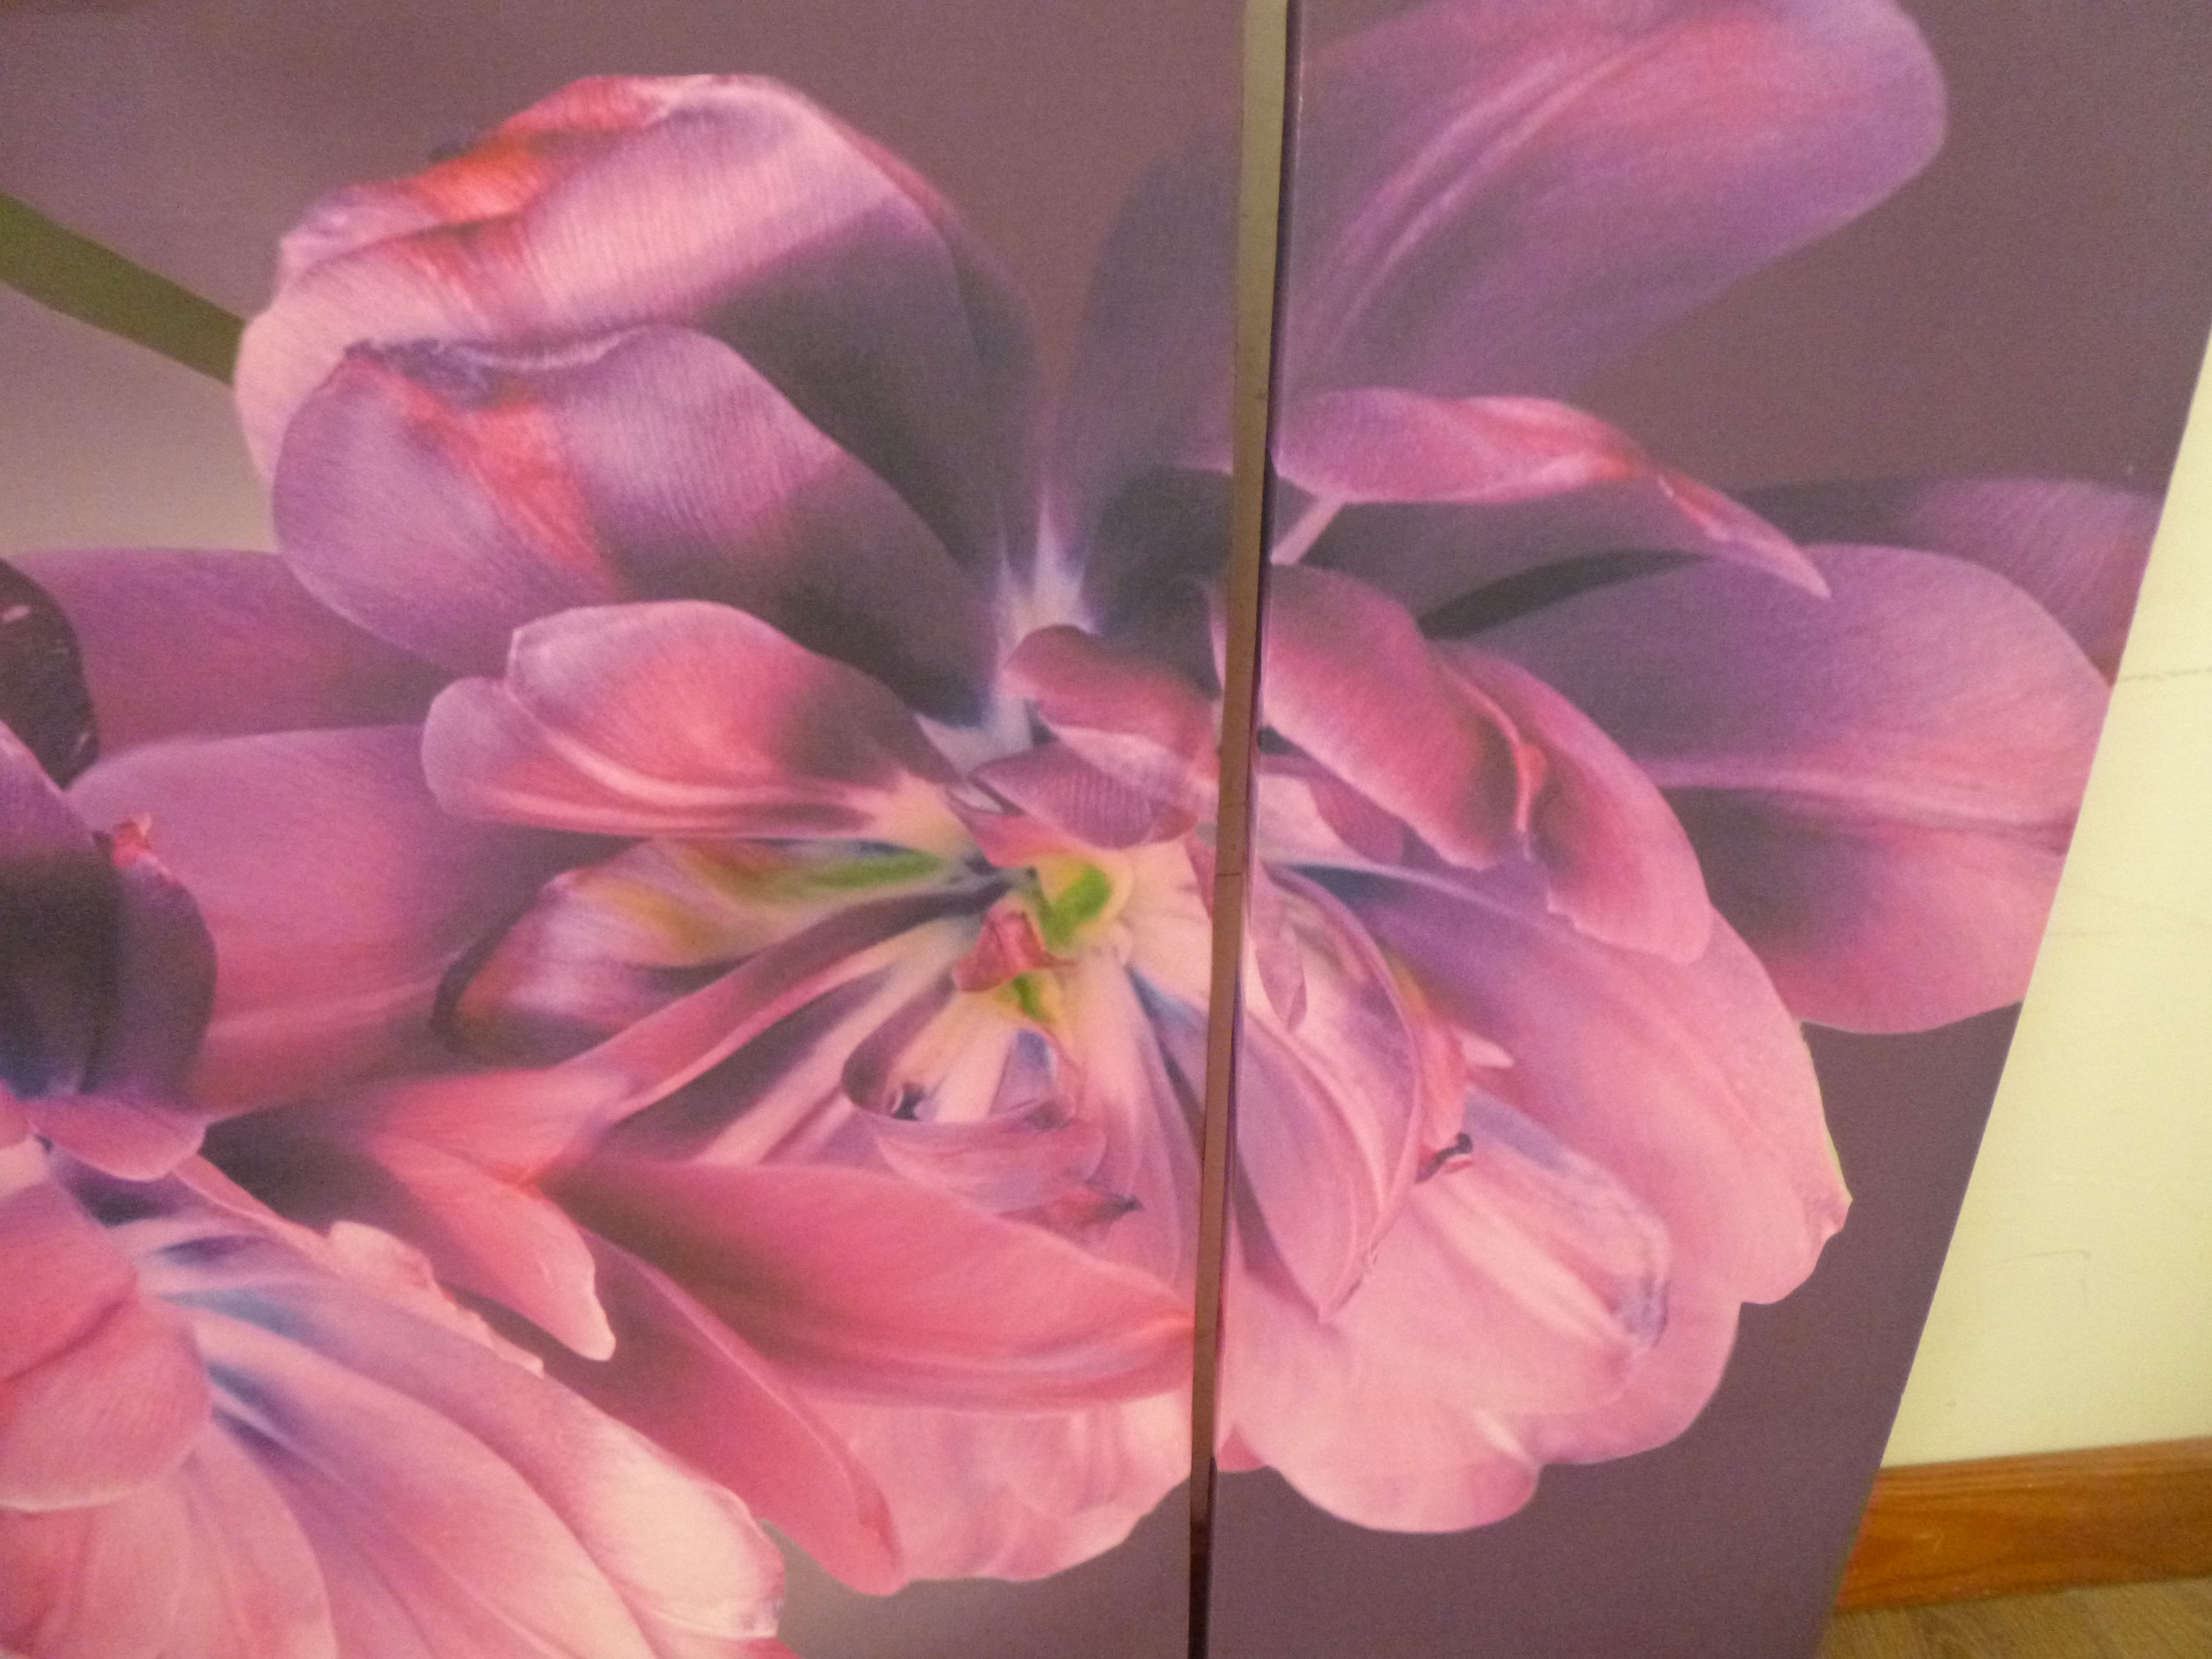 3 Part Canvas Print "Purple Flower"